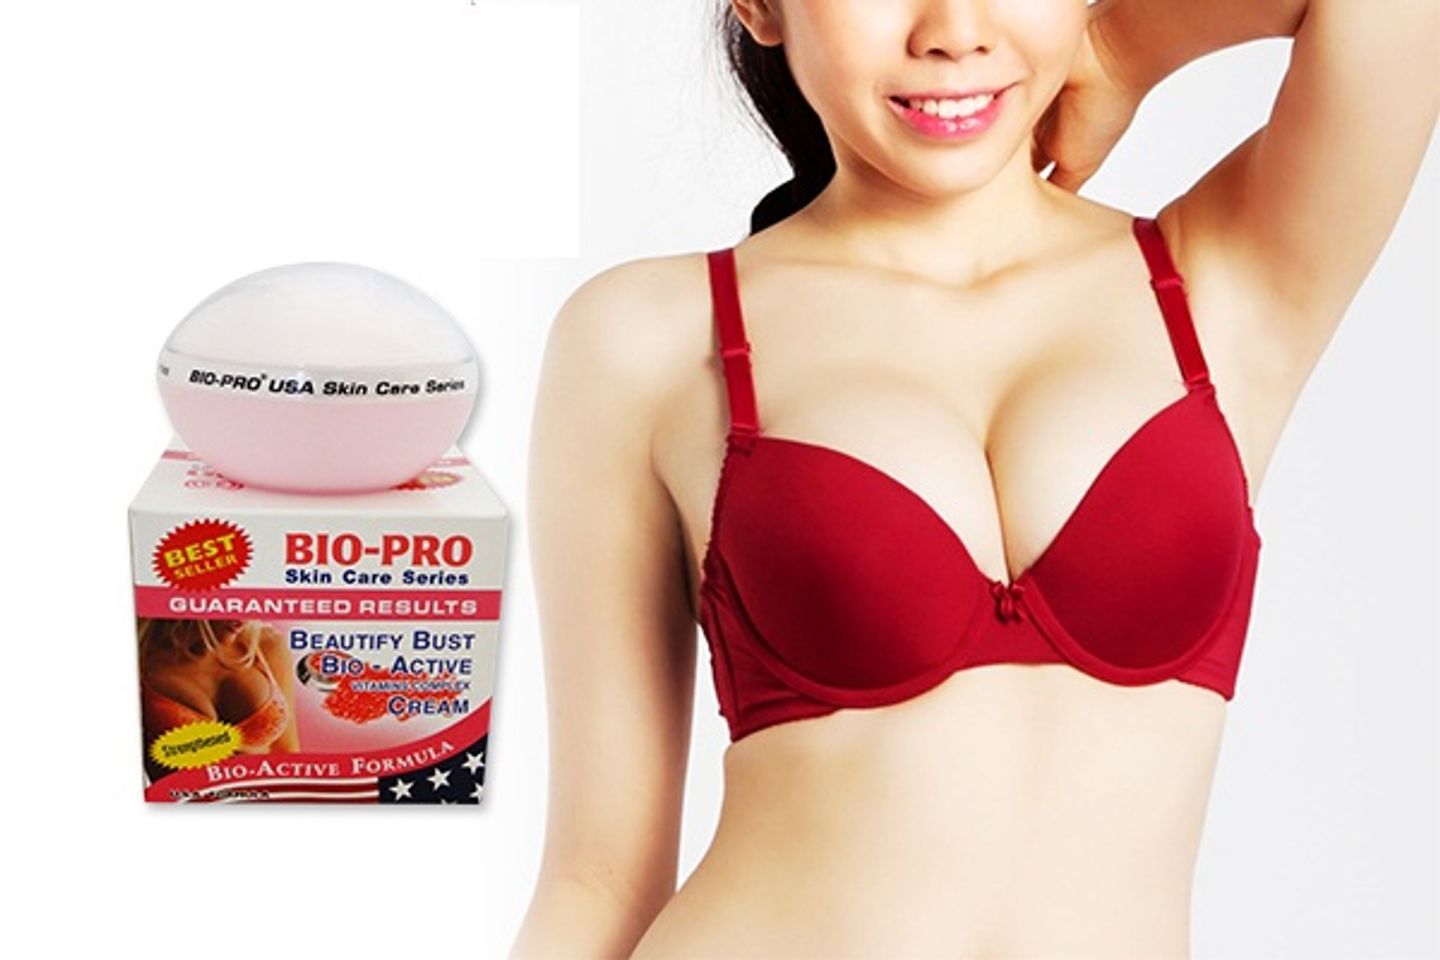 Kem nở ngực Bio Pro cho vòng 1 căng tròn quyến rũ 4